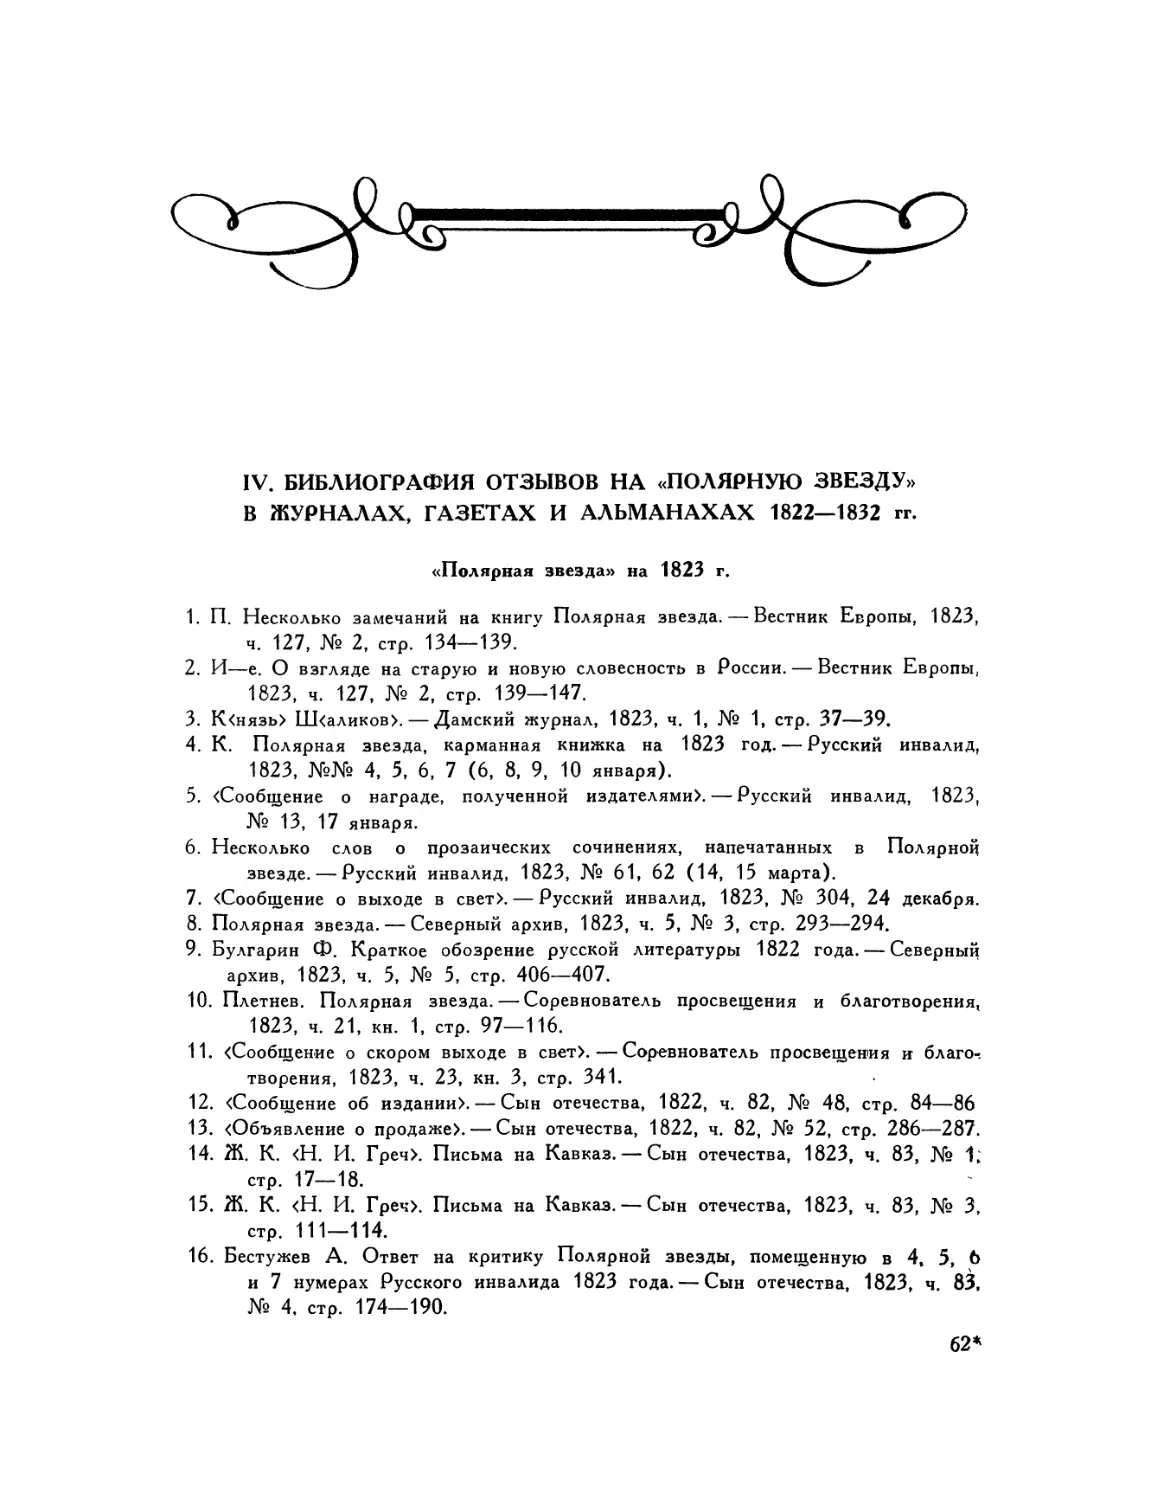 IV. Библиография отзывов на «Полярную звезду» в журналах, газетах и альманахах 1822—1832 гг